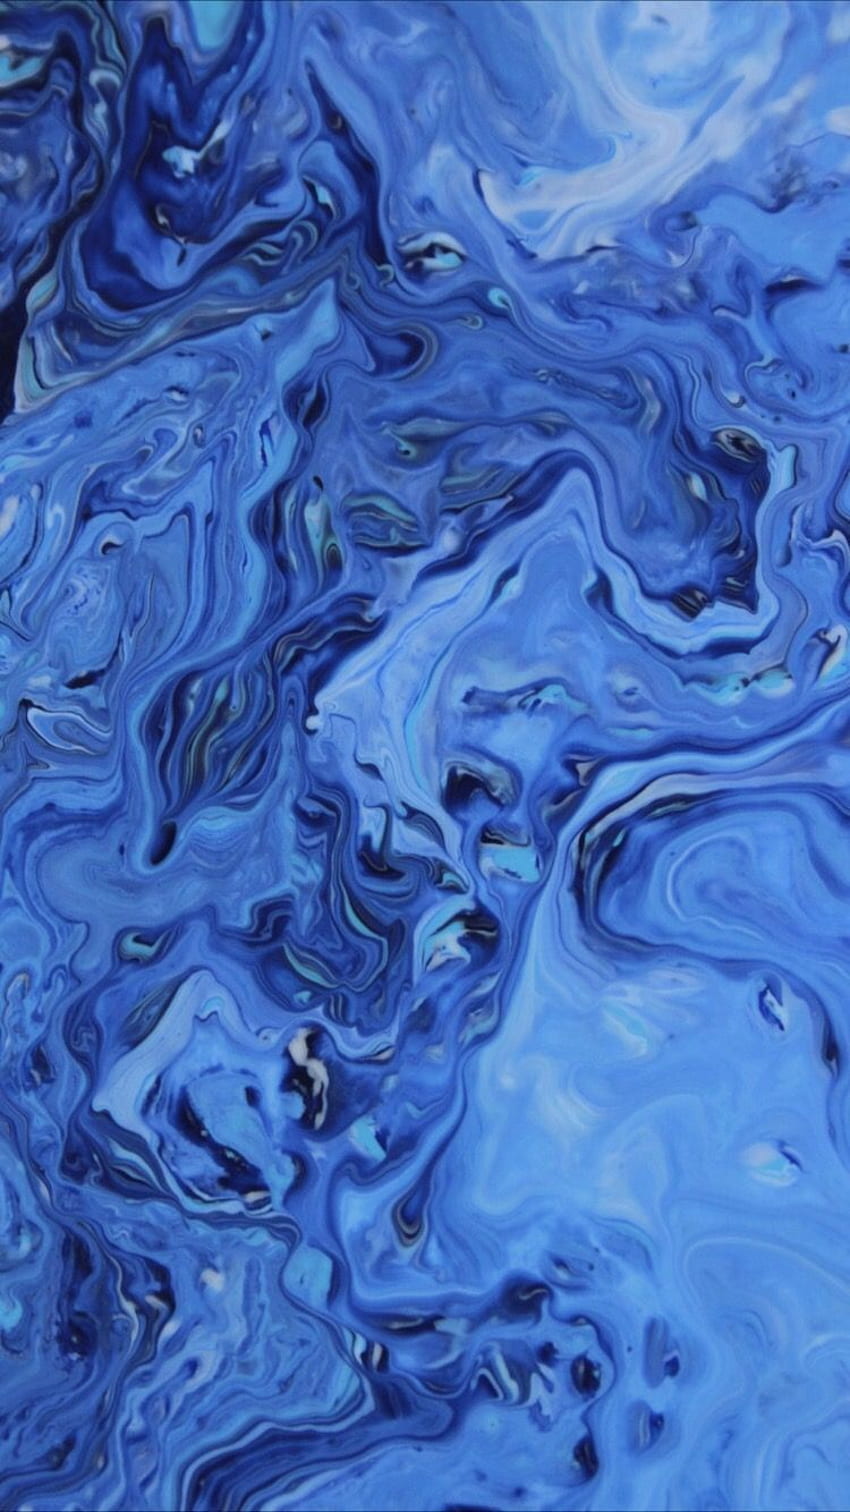 Nền VSCO background blue là điểm nhấn thu hút mắt nhất của bức hình. Hãy xem những chi tiết màu xanh này trên hình ảnh liên quan và cảm nhận vẻ đẹp tươi mới trong từng khung hình.